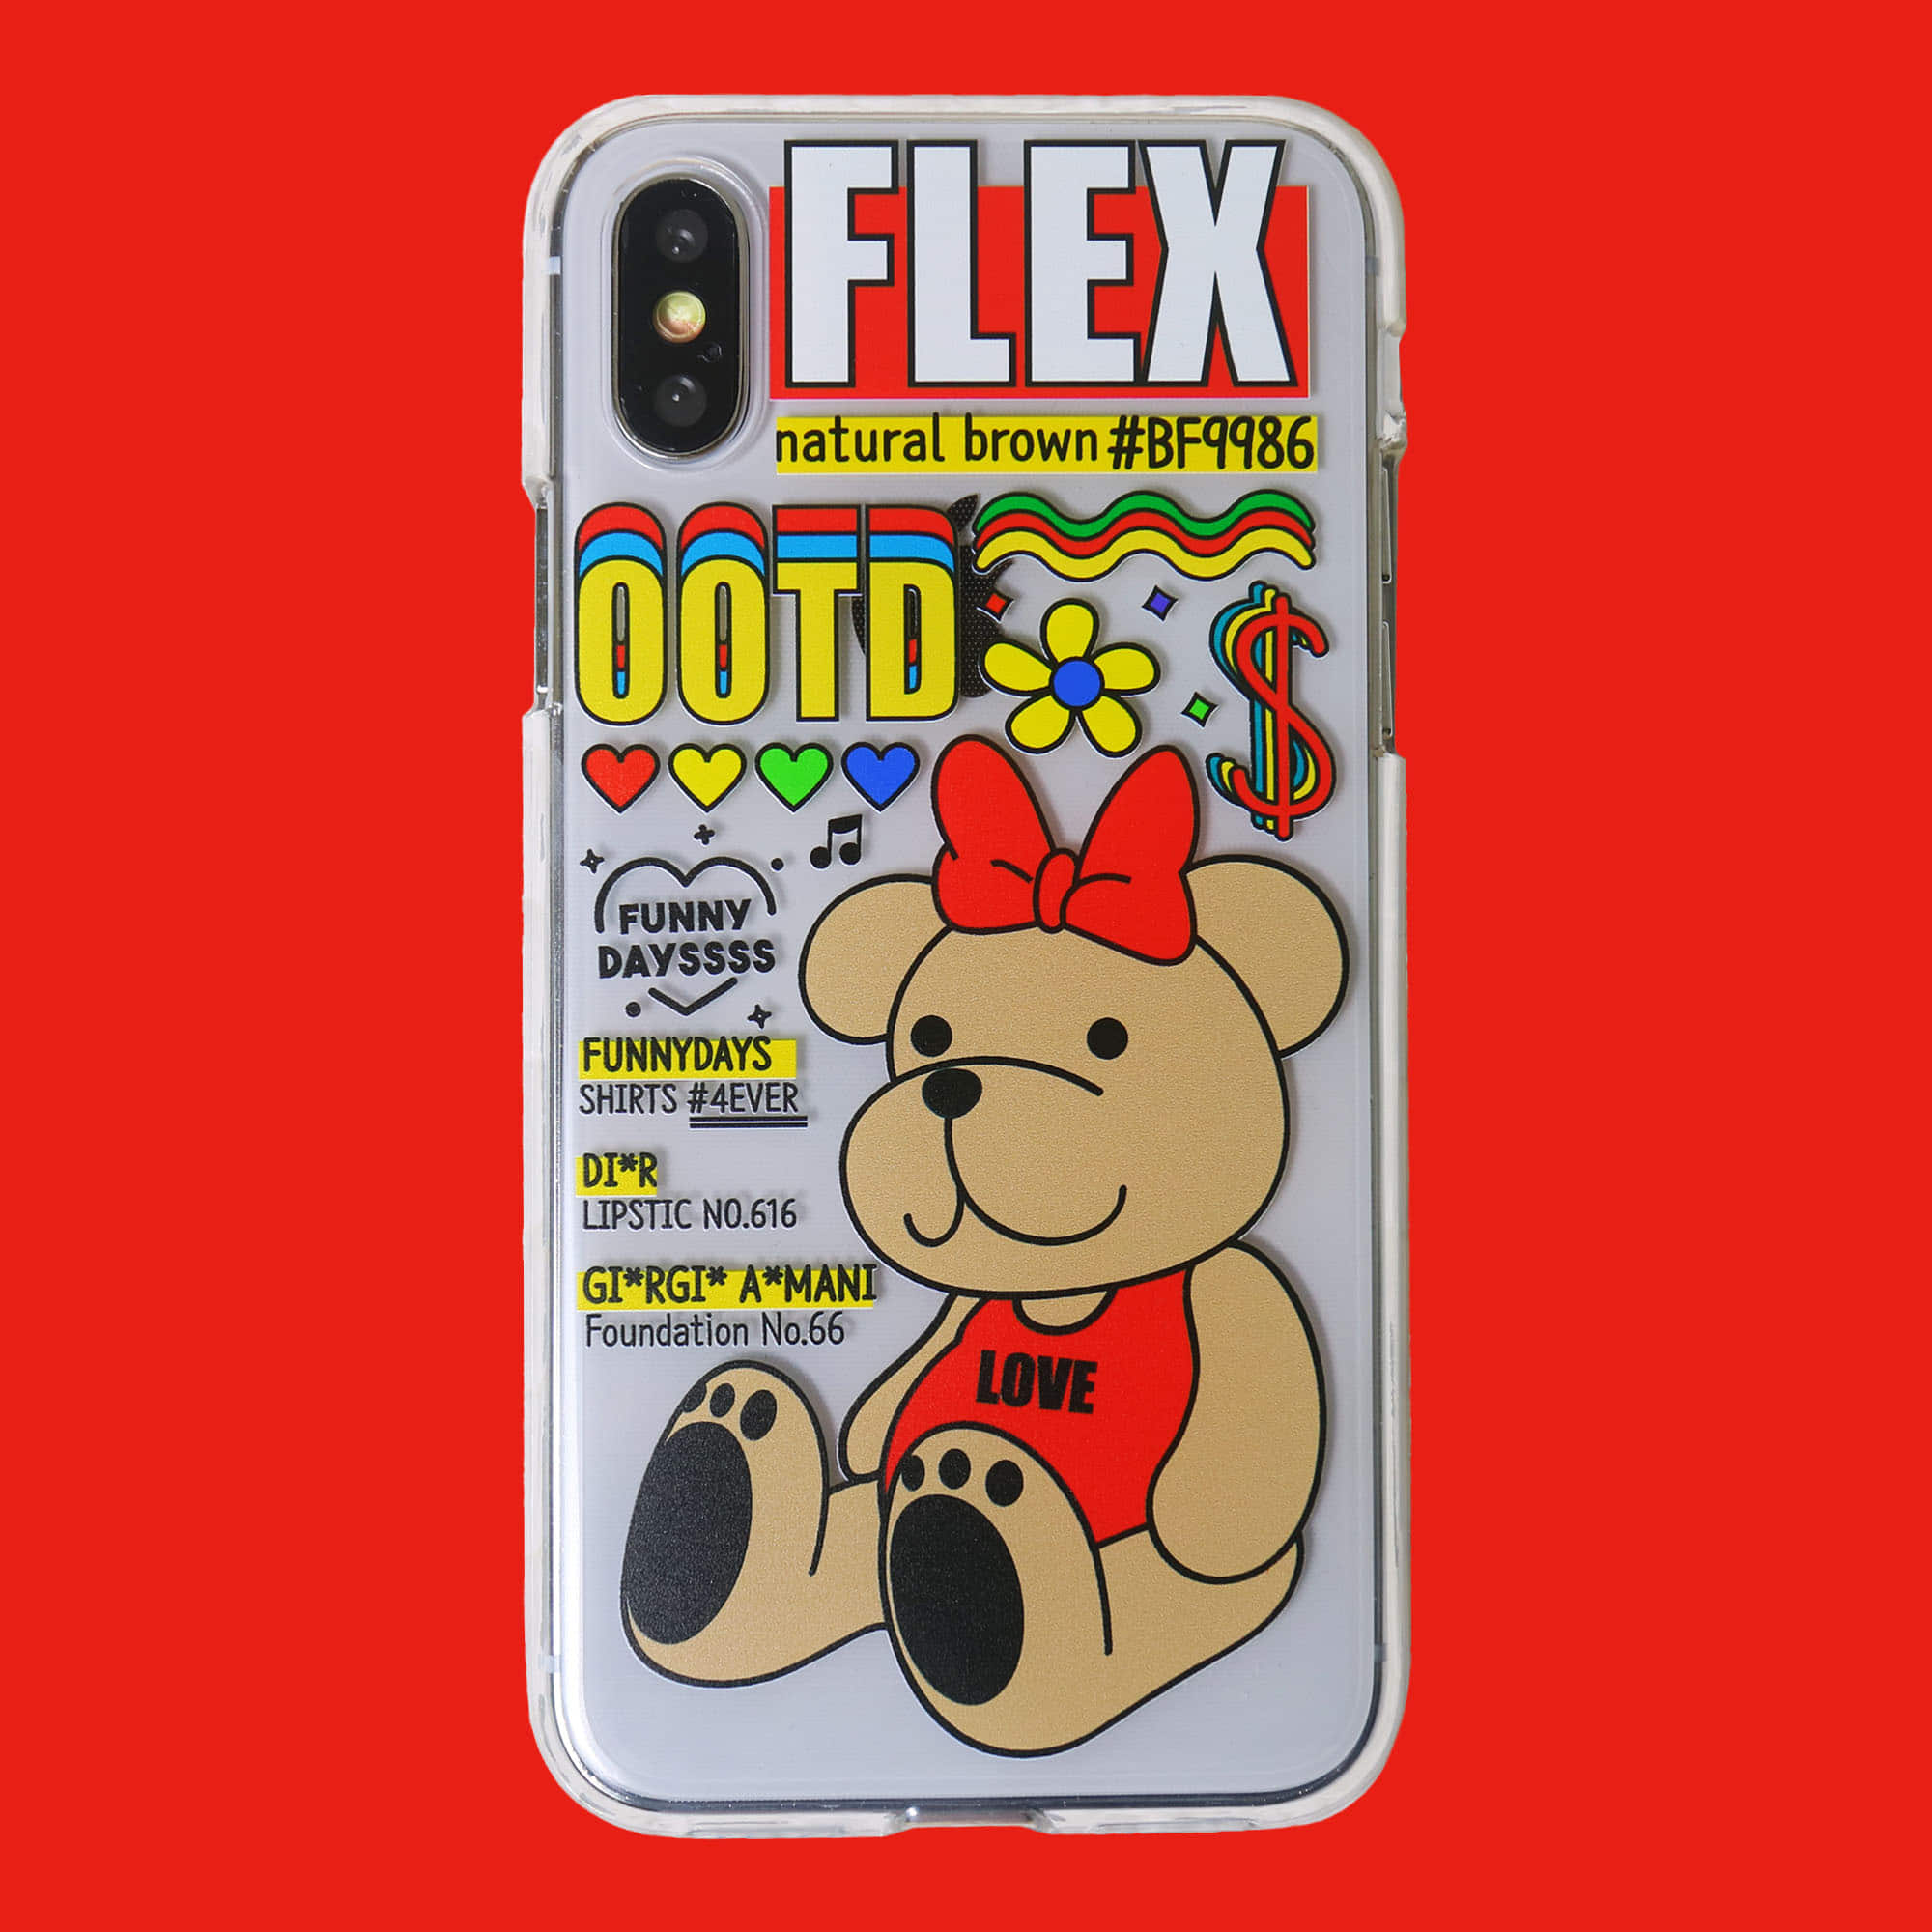 아이폰X/XS/XS MAX/XR 전용 곰돌이 투명 젤리케이스